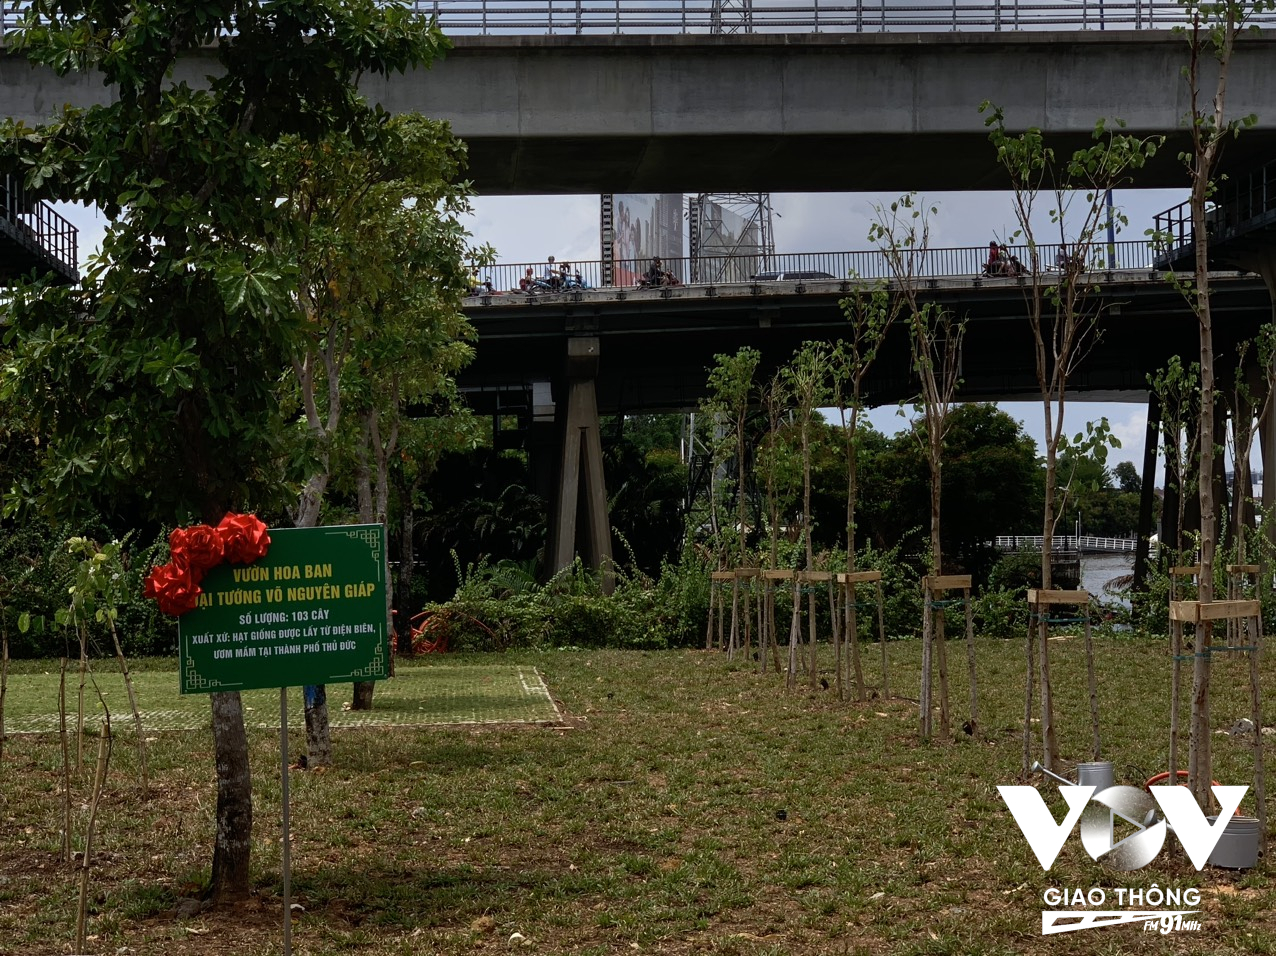 70 cây hoa ban lớn và 103 cây hoa ban nhỏ được đem từ Điện Biên về trông ngay công viên đường Võ Nguyên Giáp cạnh bờ sông Sài Gòn